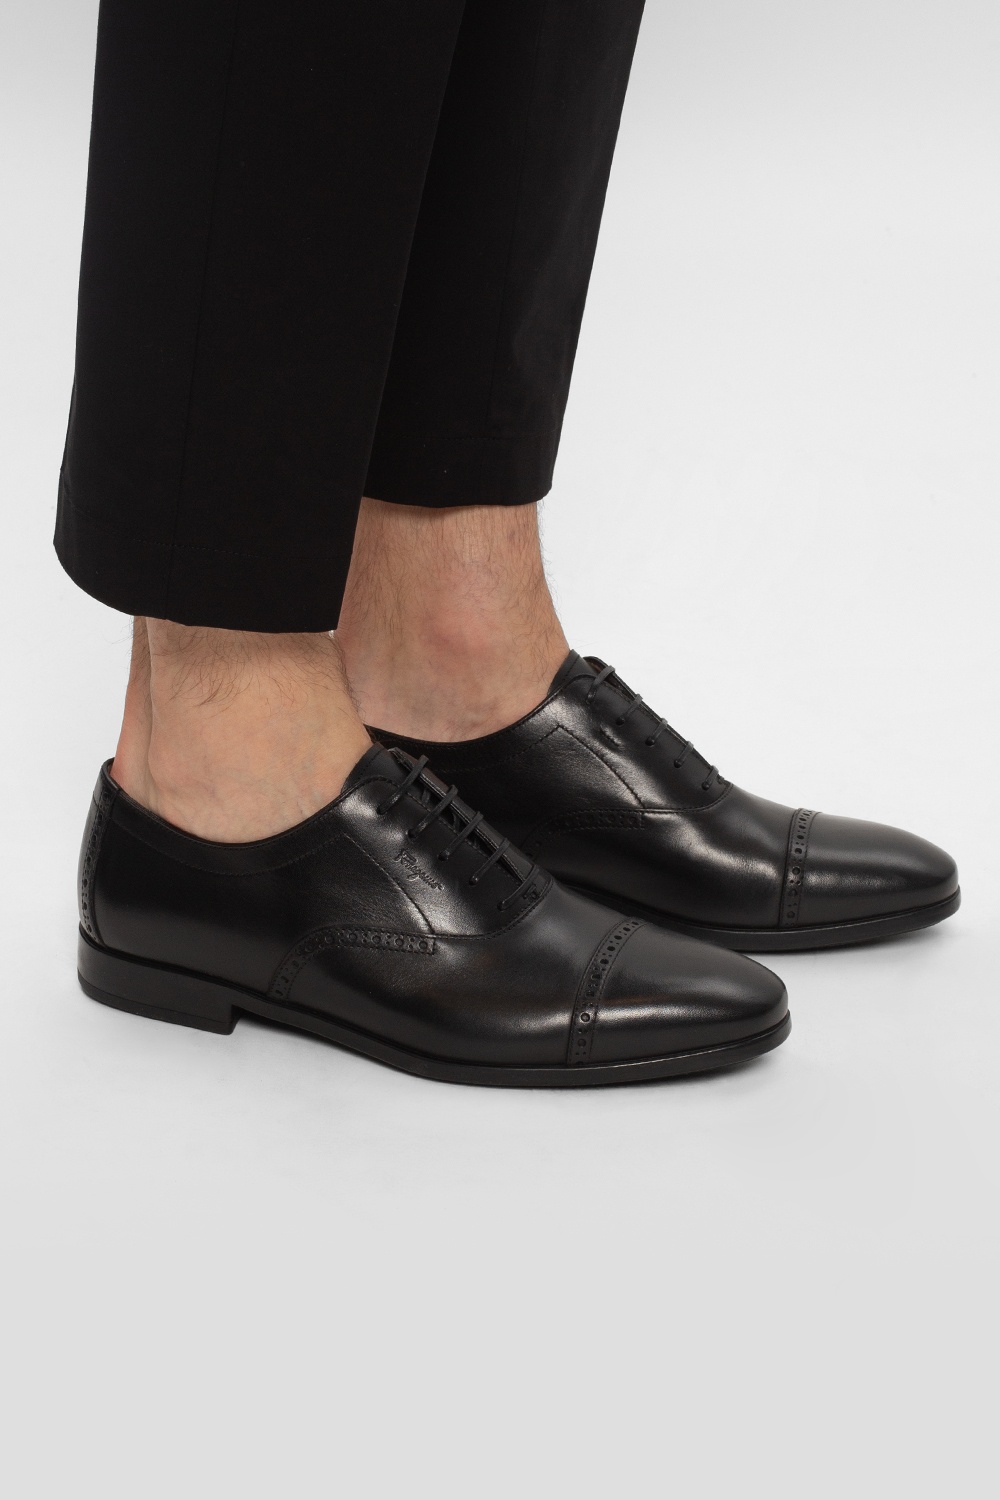 FERRAGAMO ‘Riley’ leather shoes | Men's Shoes | Vitkac